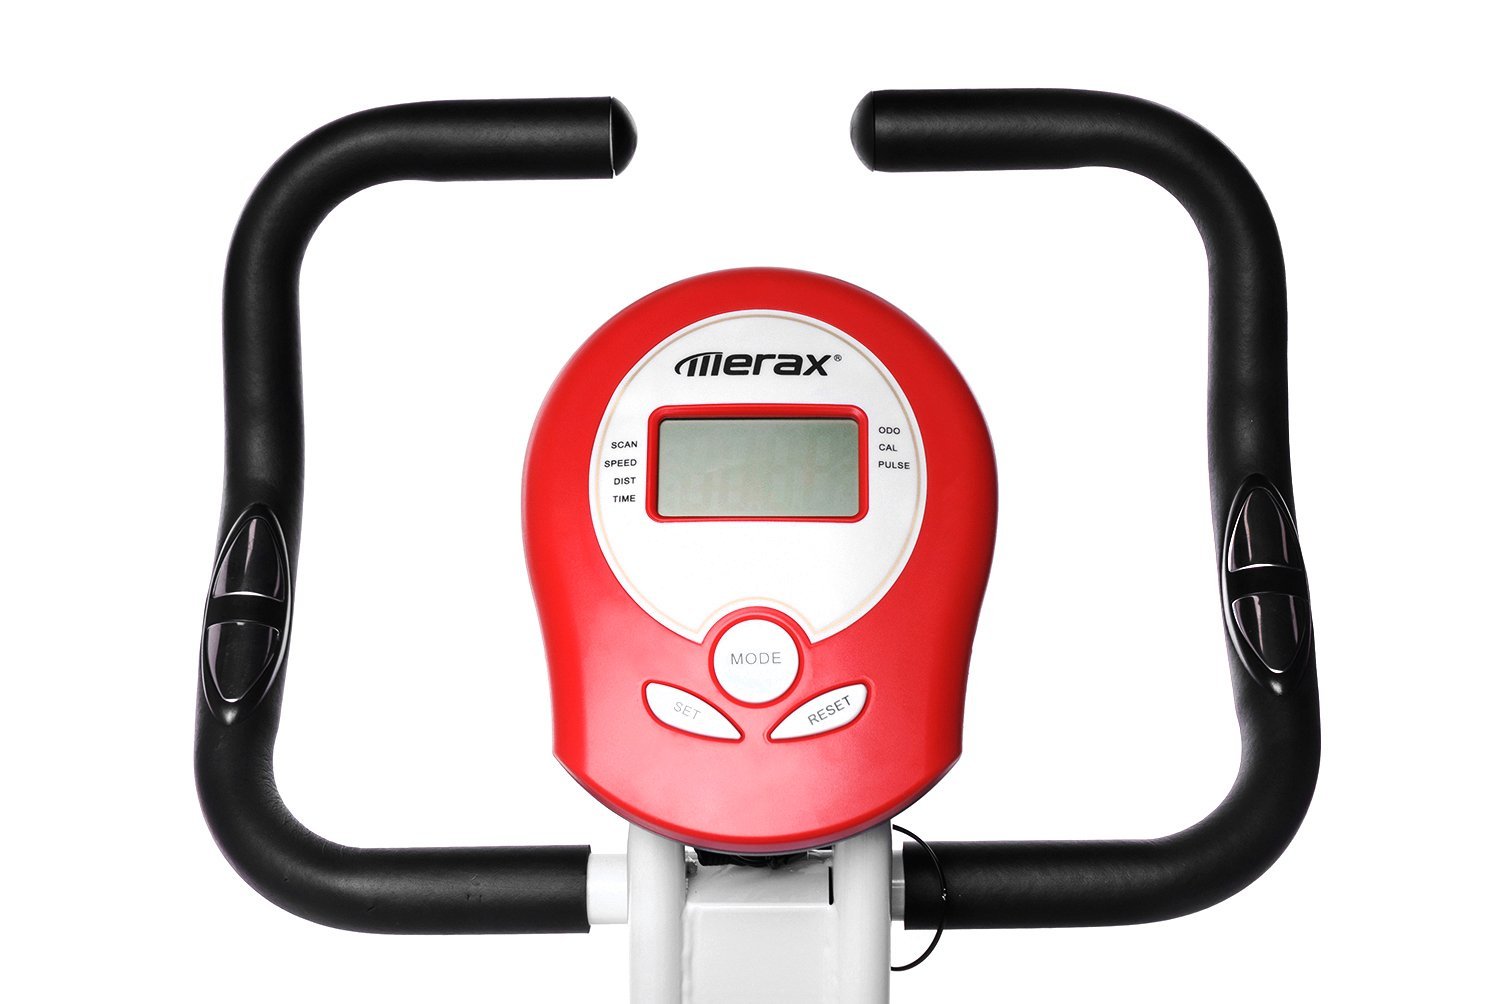 Merax Folding Adjustable Magnetic Upright Exercise Bike Fitness Machine ...